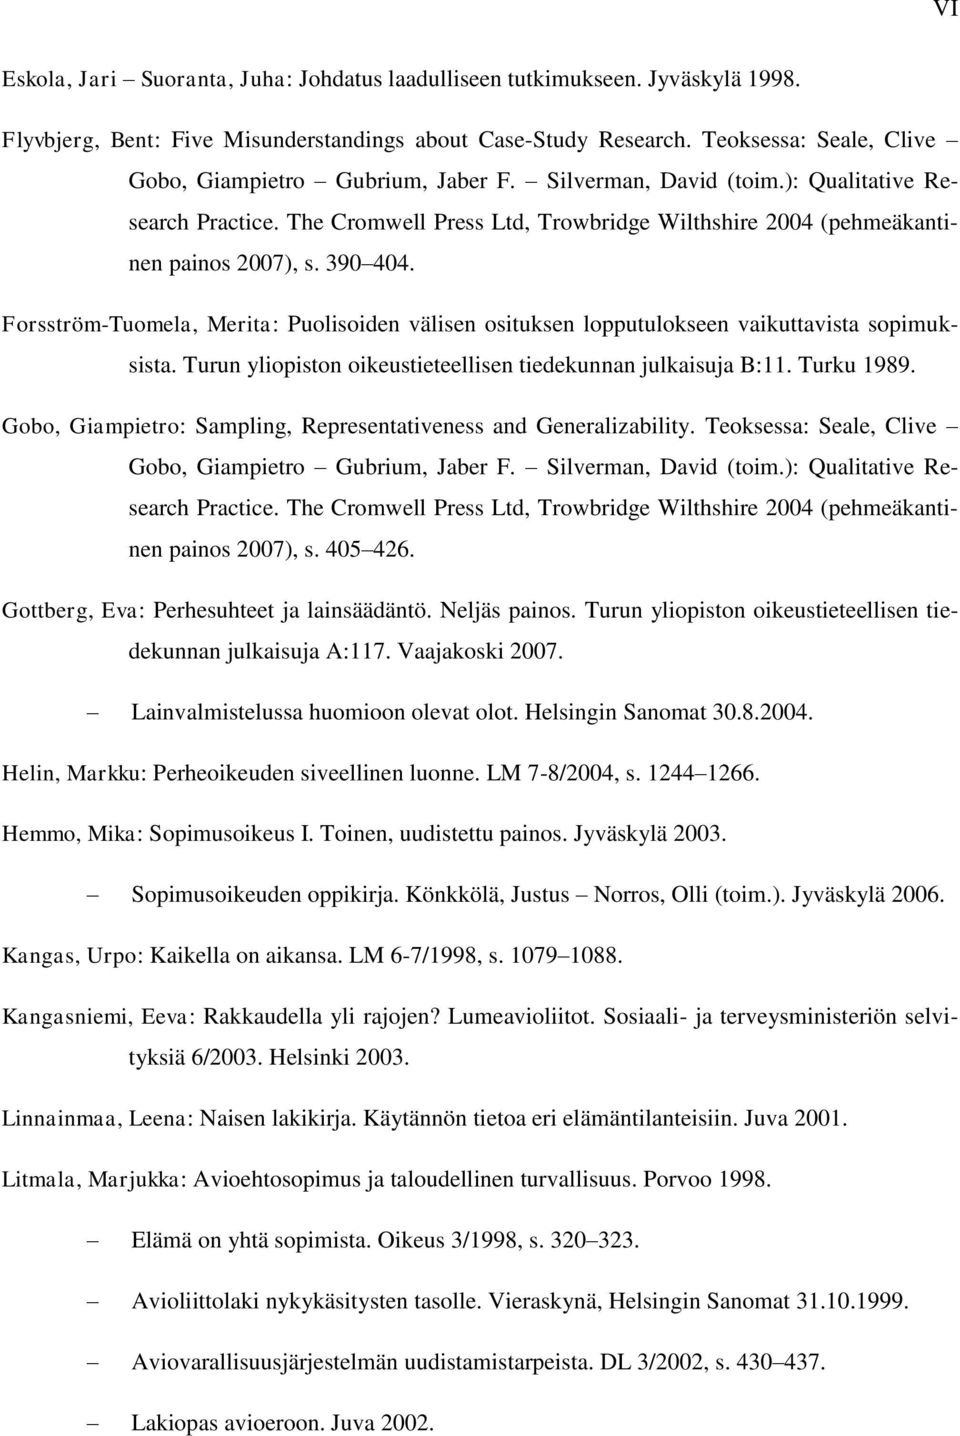 390 404. Forsström-Tuomela, Merita: Puolisoiden välisen osituksen lopputulokseen vaikuttavista sopimuksista. Turun yliopiston oikeustieteellisen tiedekunnan julkaisuja B:11. Turku 1989.